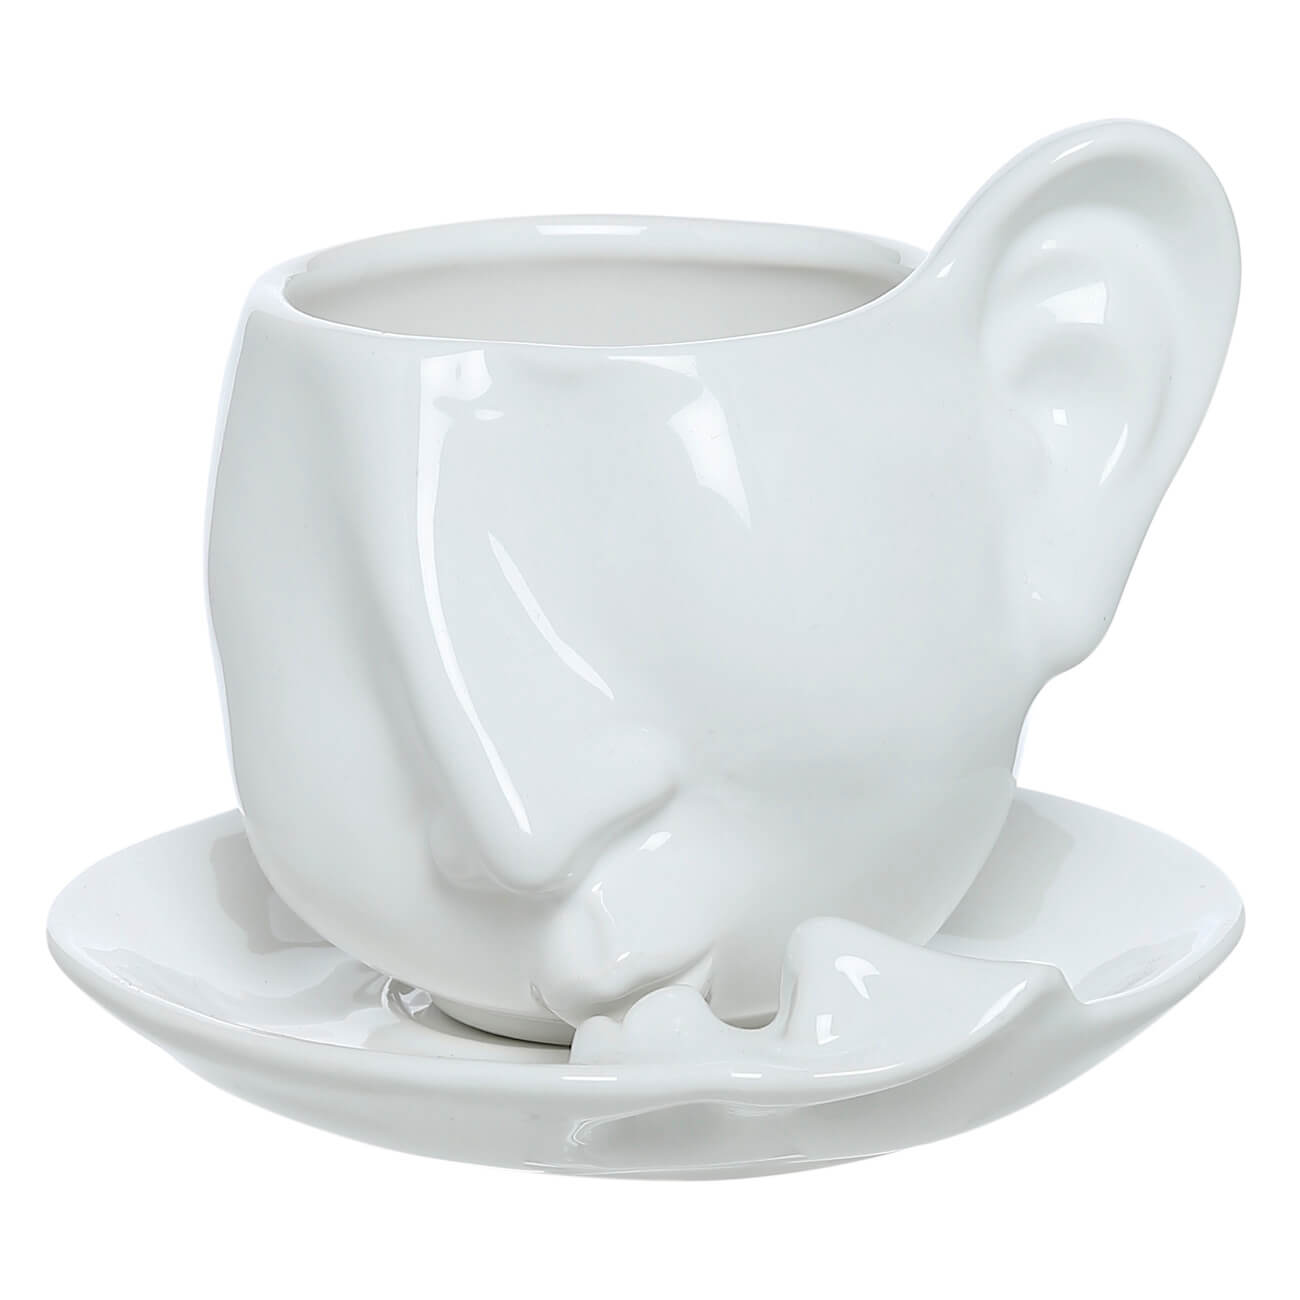 Пара чайная, 1 перс, 2 пр, 260 мл, керамика, белая, Поцелуй, He&She пара чайная чашка блюдце 350 мл tudor tu9999 4